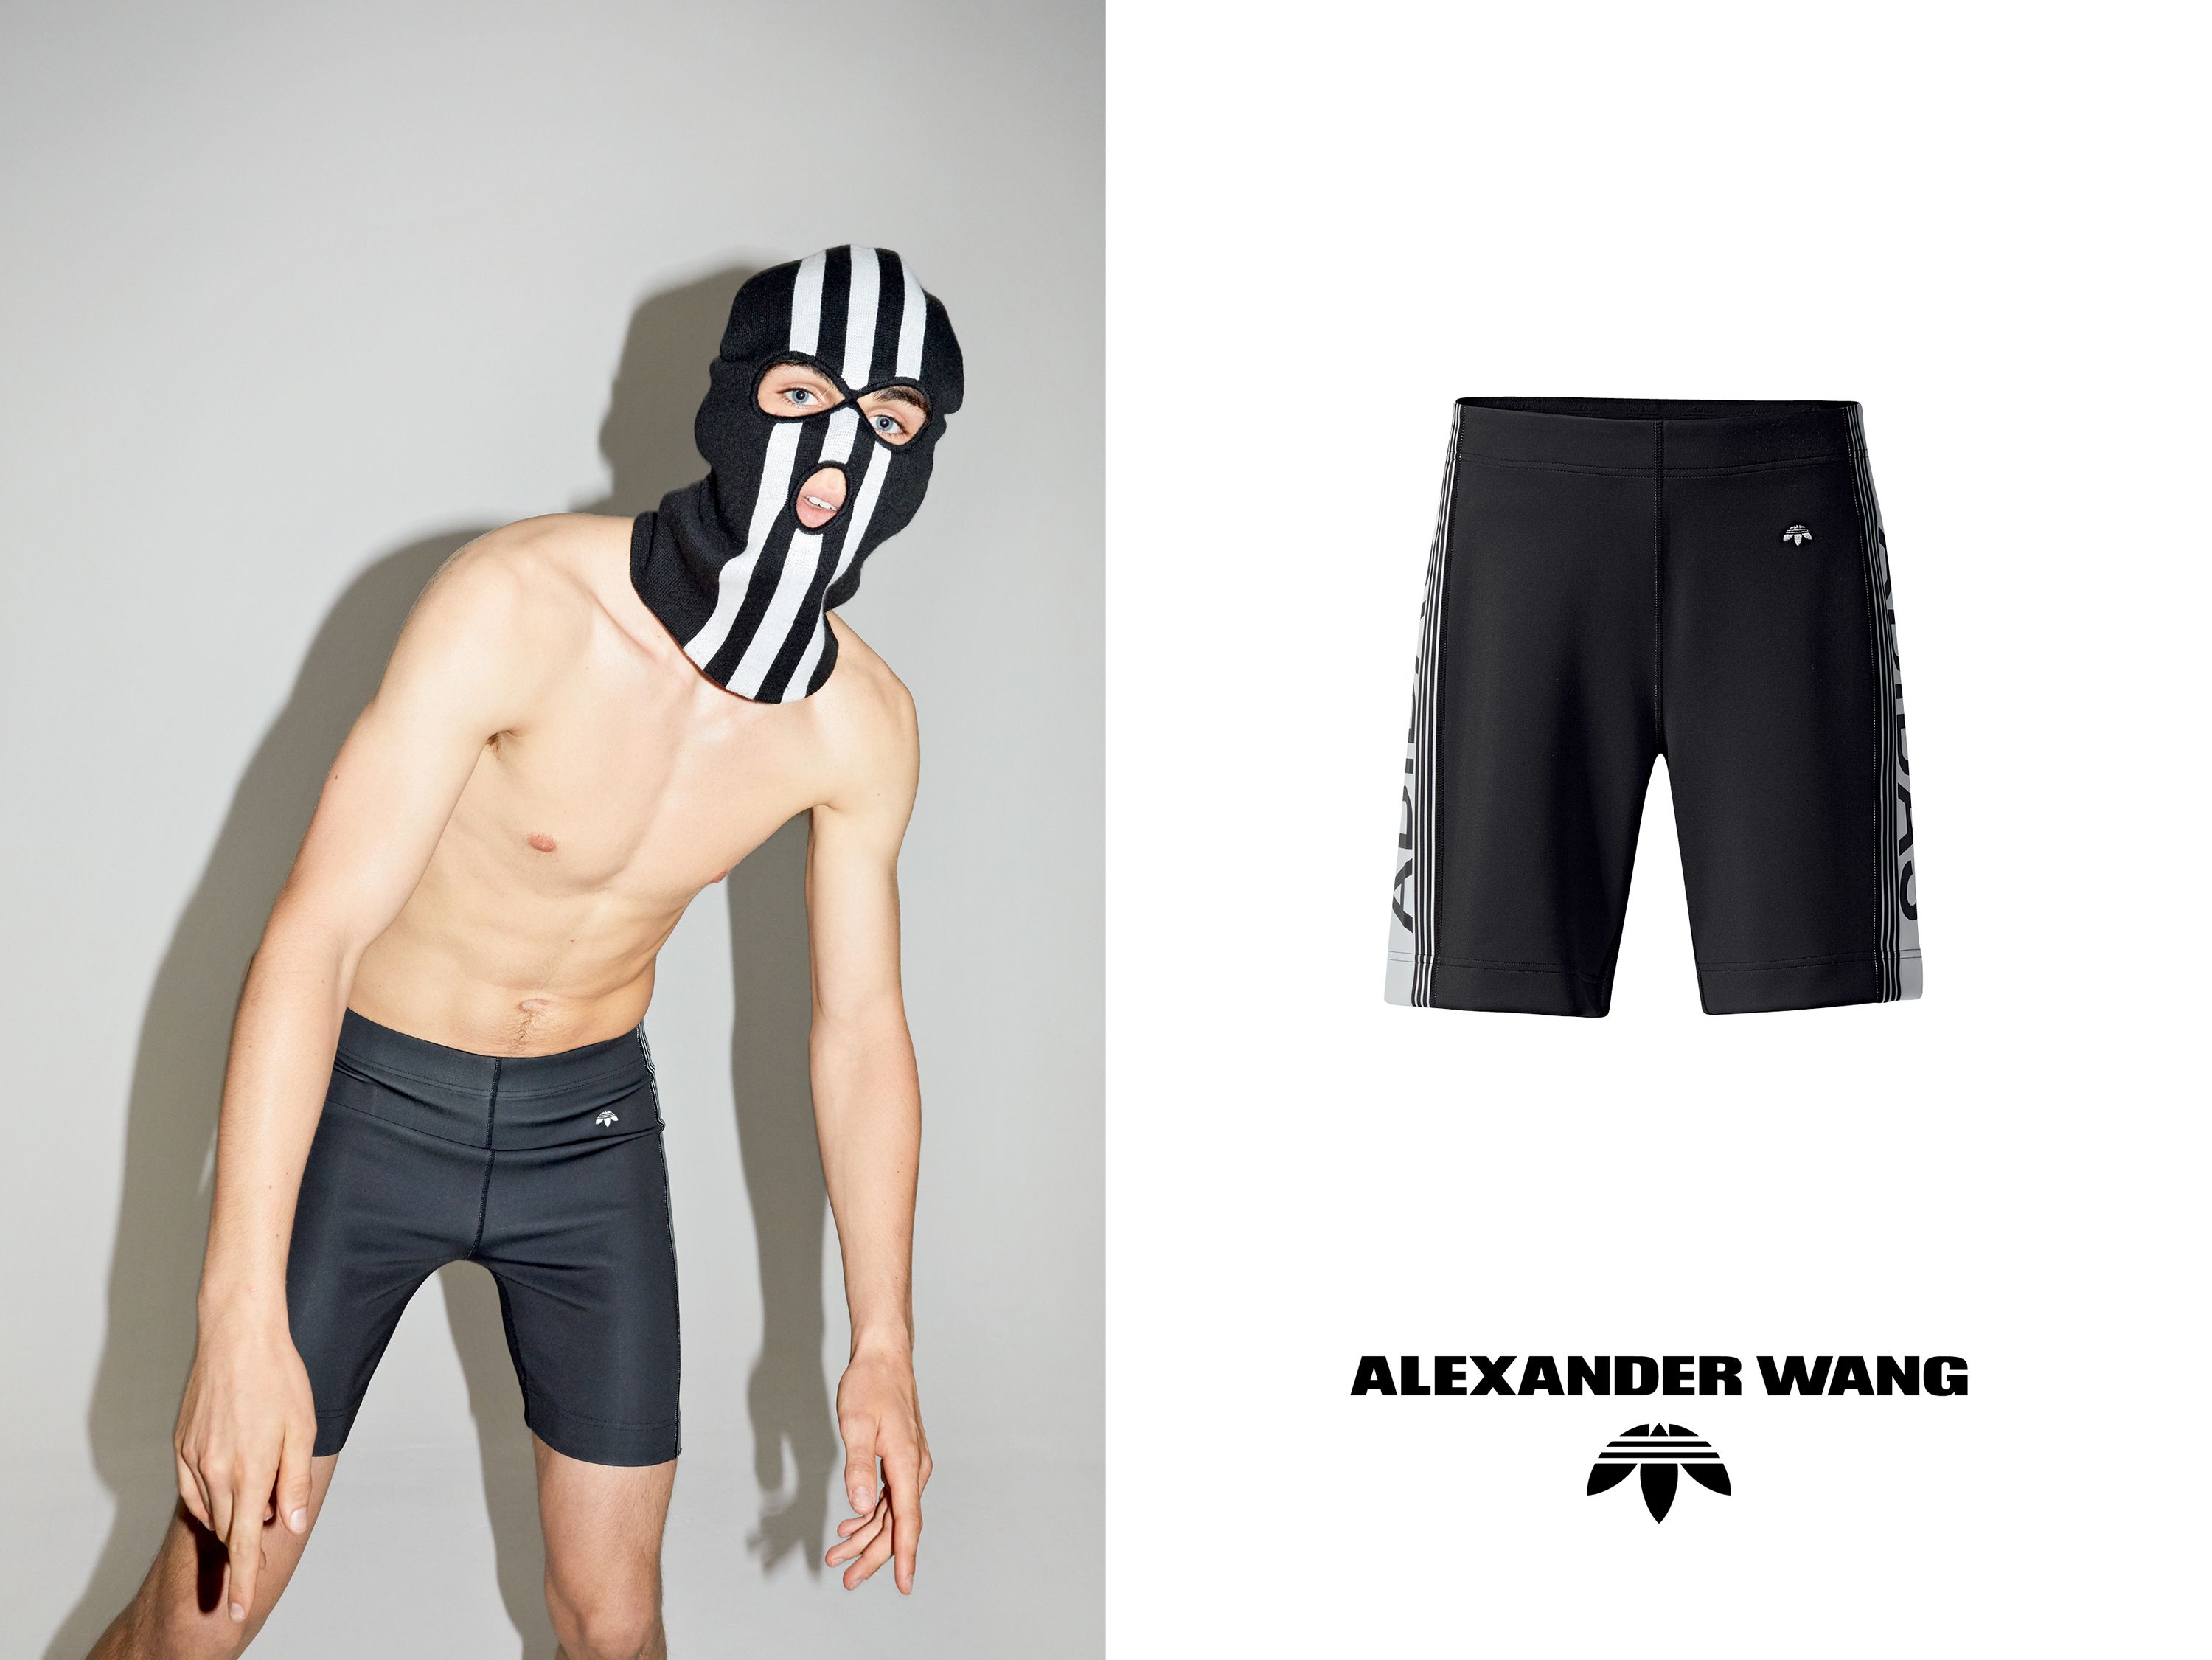 Ord astronomi køre Adidas x Alexander Wang Biker Look Book - Adidas Originals x Alexander Wang  Season 2